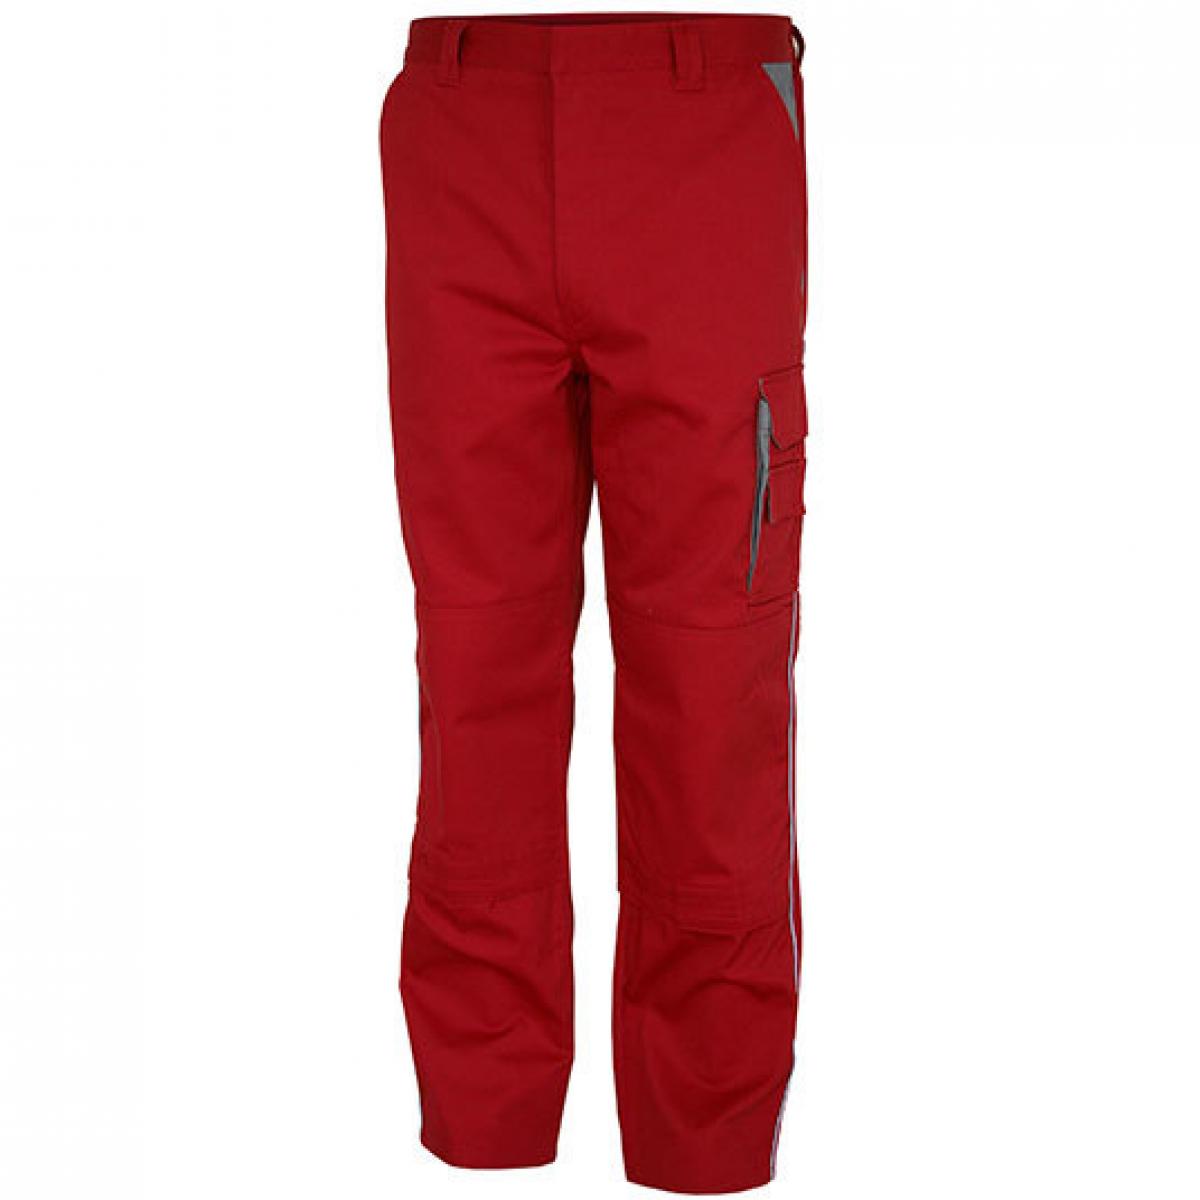 Hersteller: Carson Contrast Herstellernummer: CC709H Artikelbezeichnung: Herren Work Pants Arbeitshose / Bei 60 Grad waschbar Farbe: Red/Grey